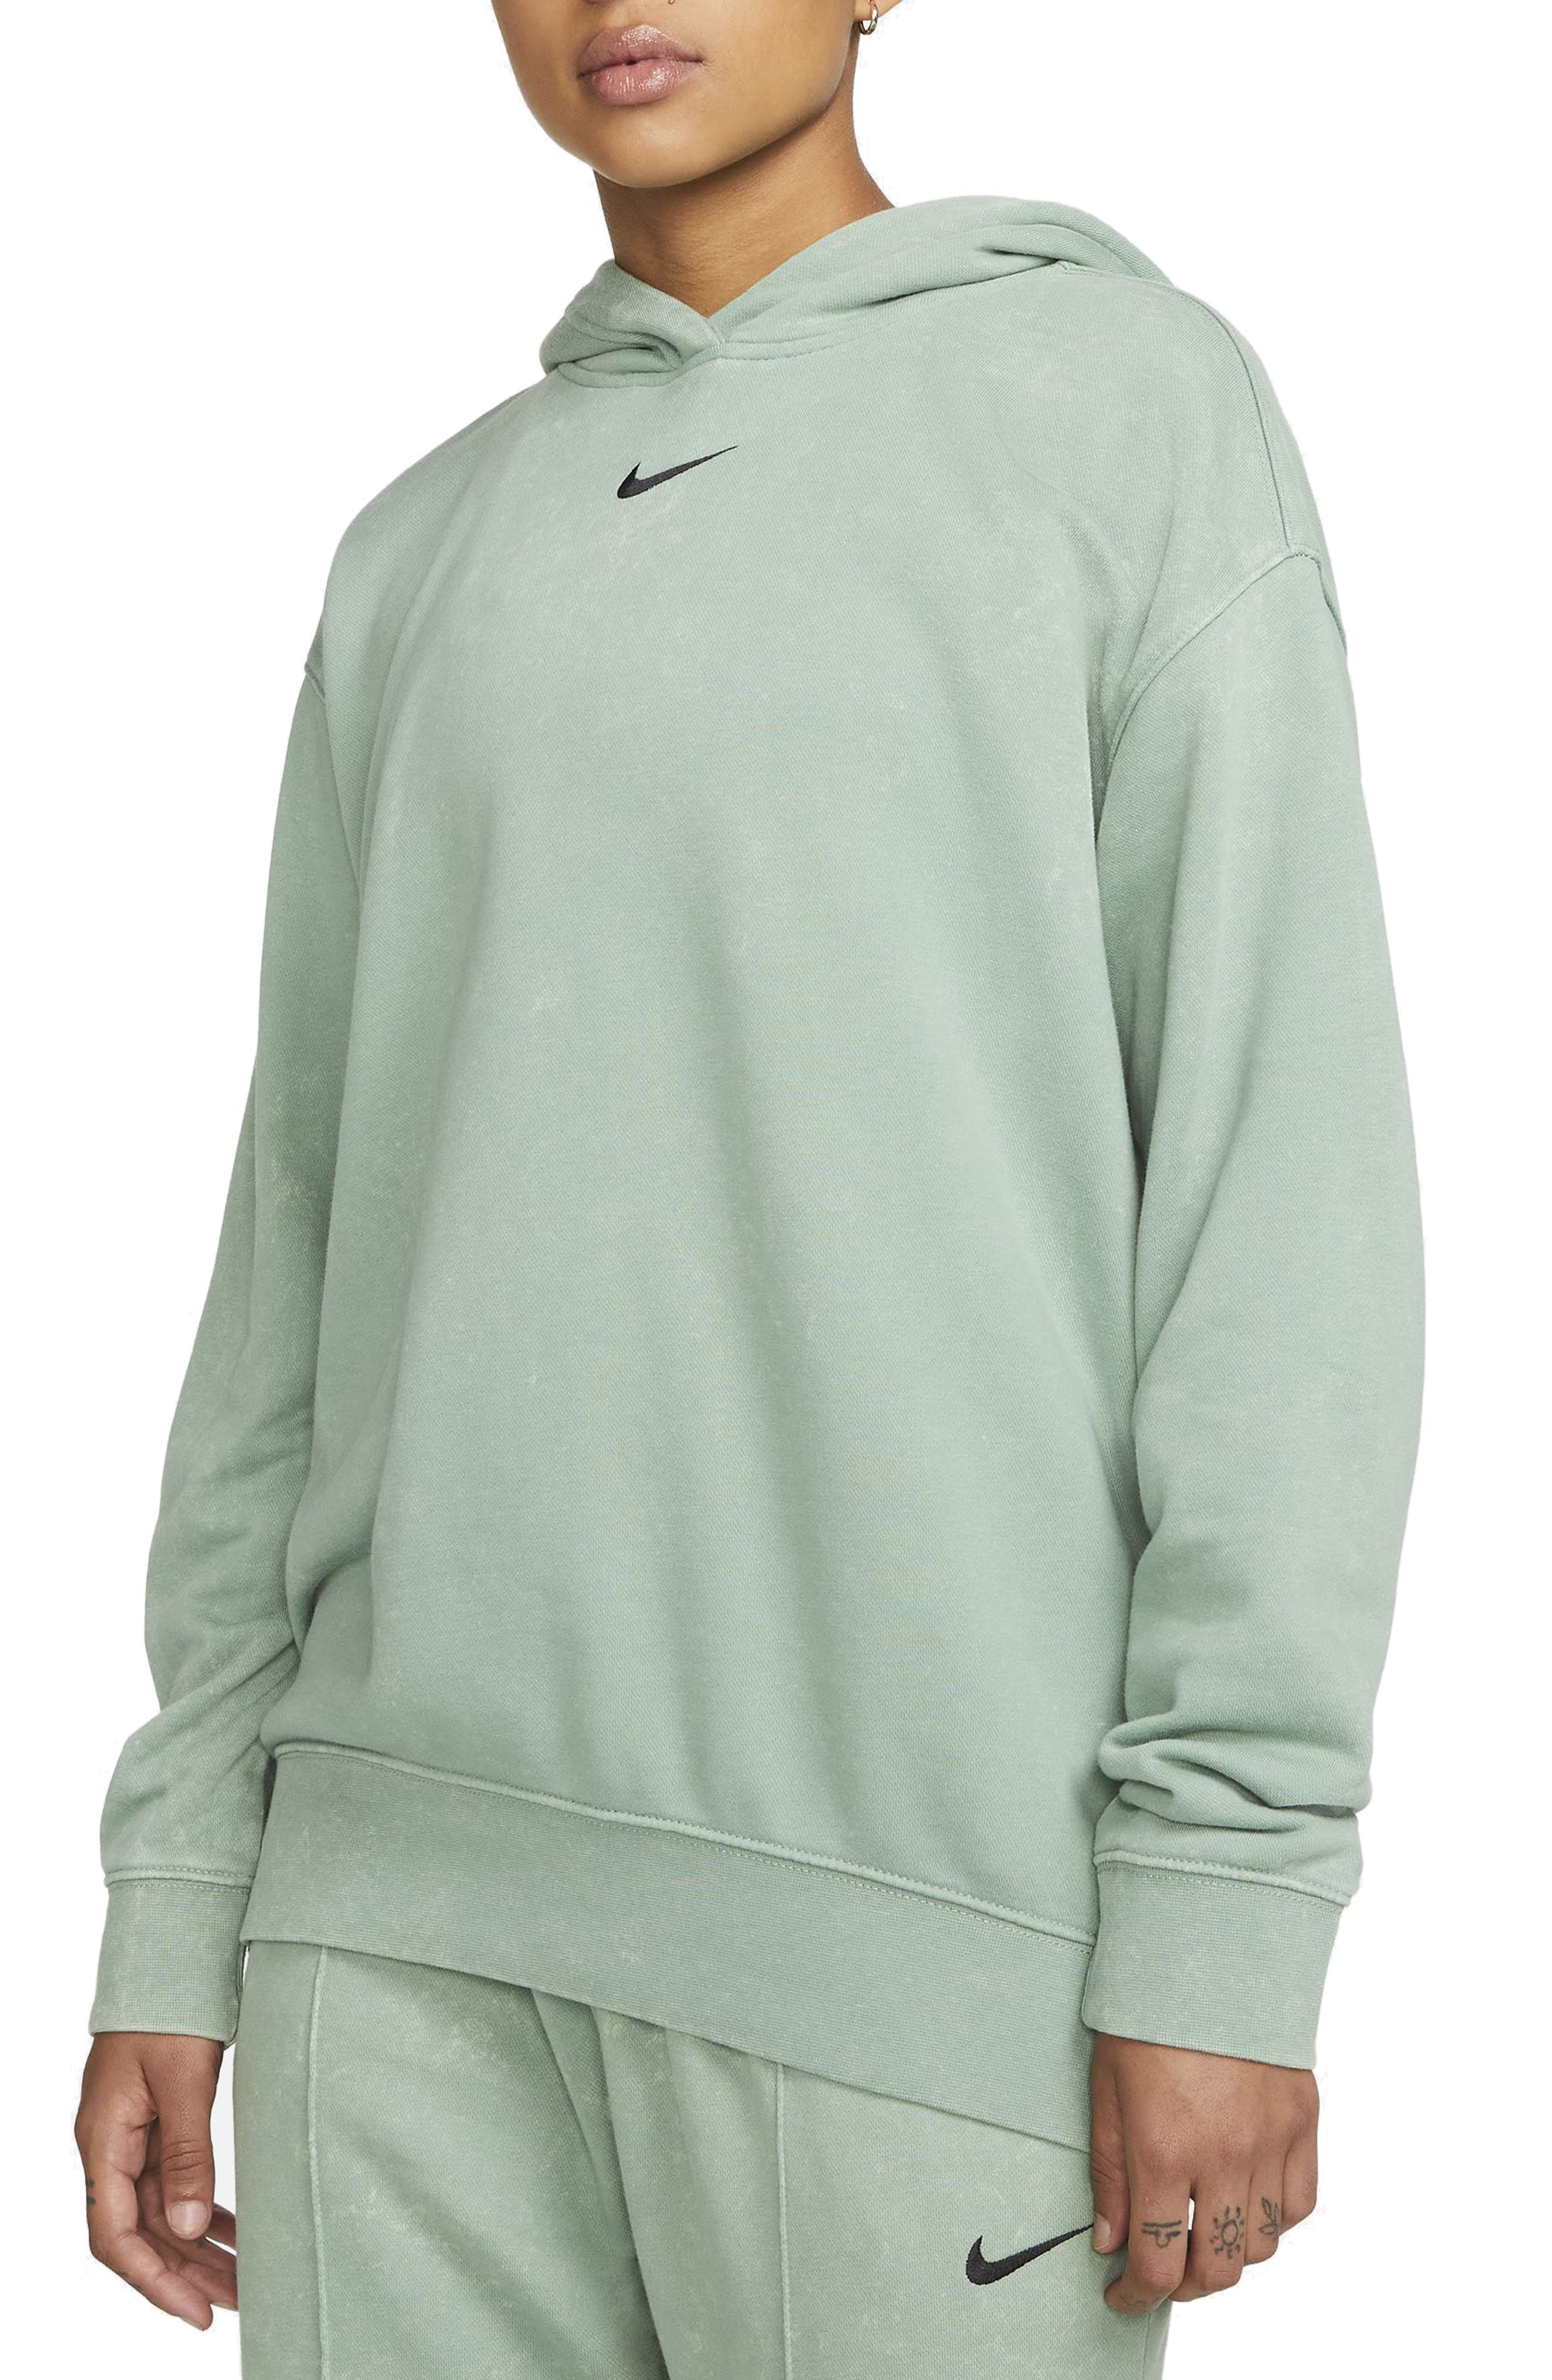 Sweatshirt Boyfriend Hoodies Long Sleeve Hooded Pullover nikunLONG Tops Tracksuit Plus Size High Low Shirt 